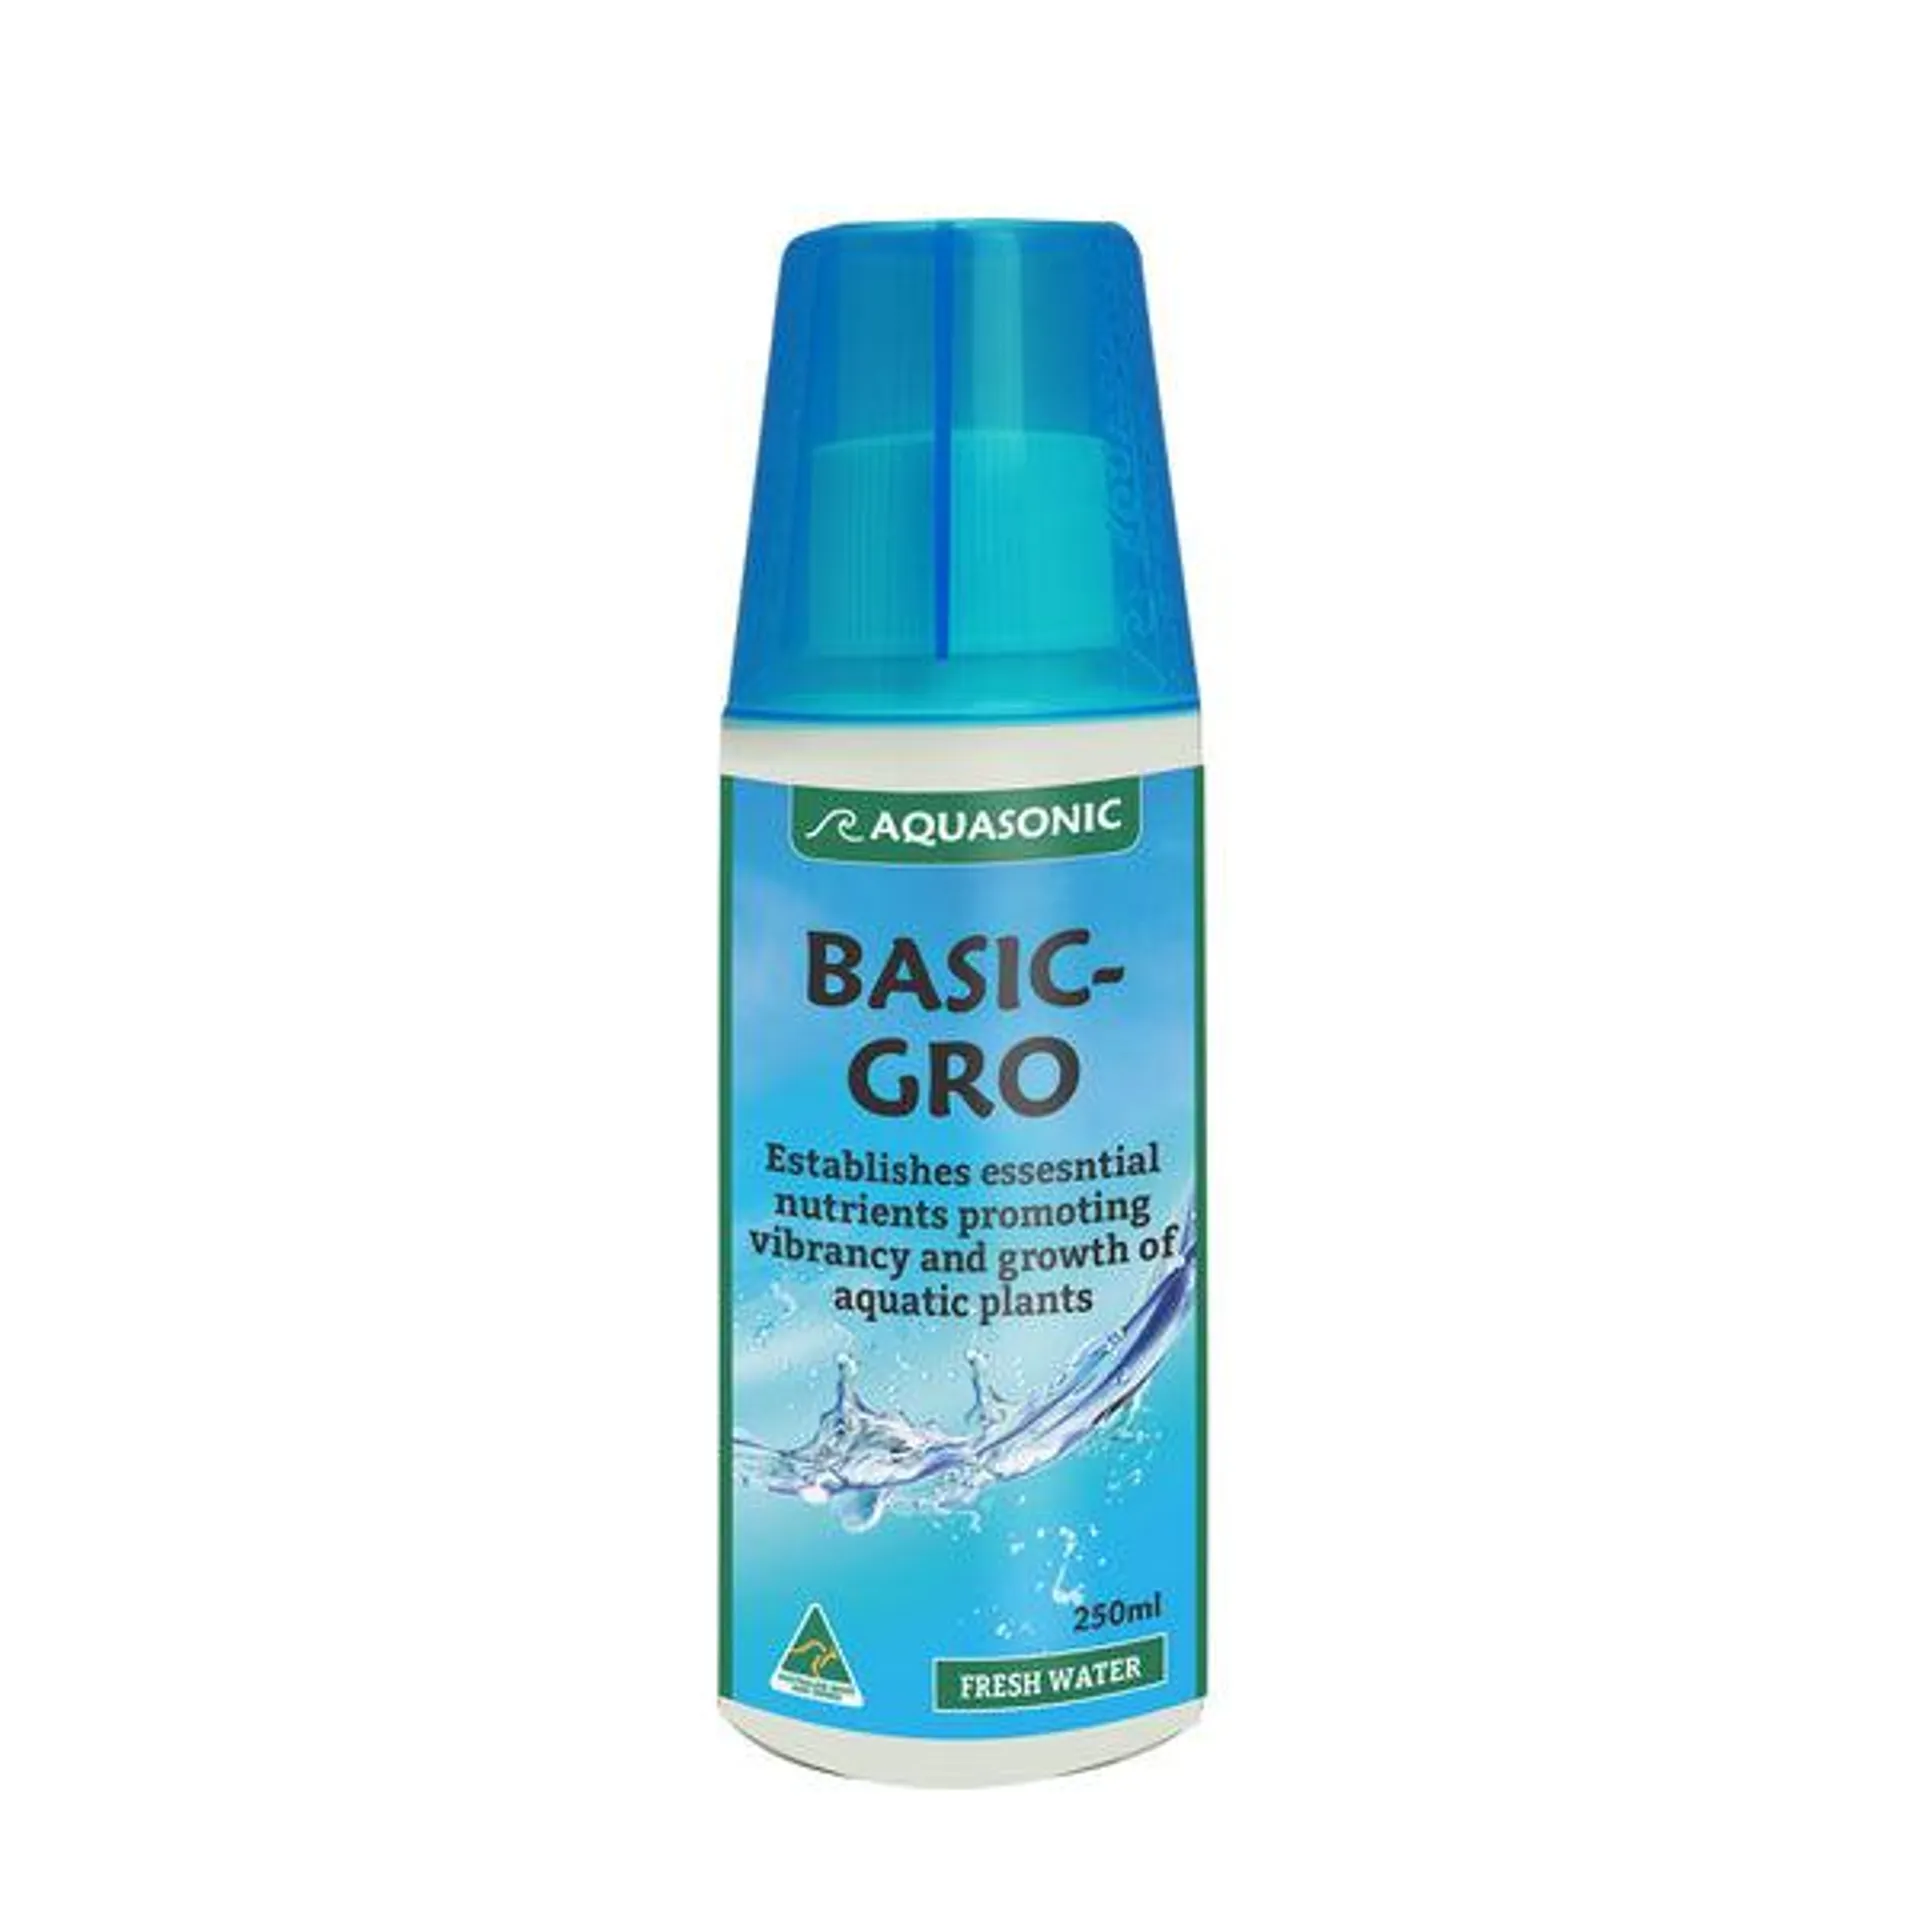 Aquasonic - Basic-Gro (250ml)